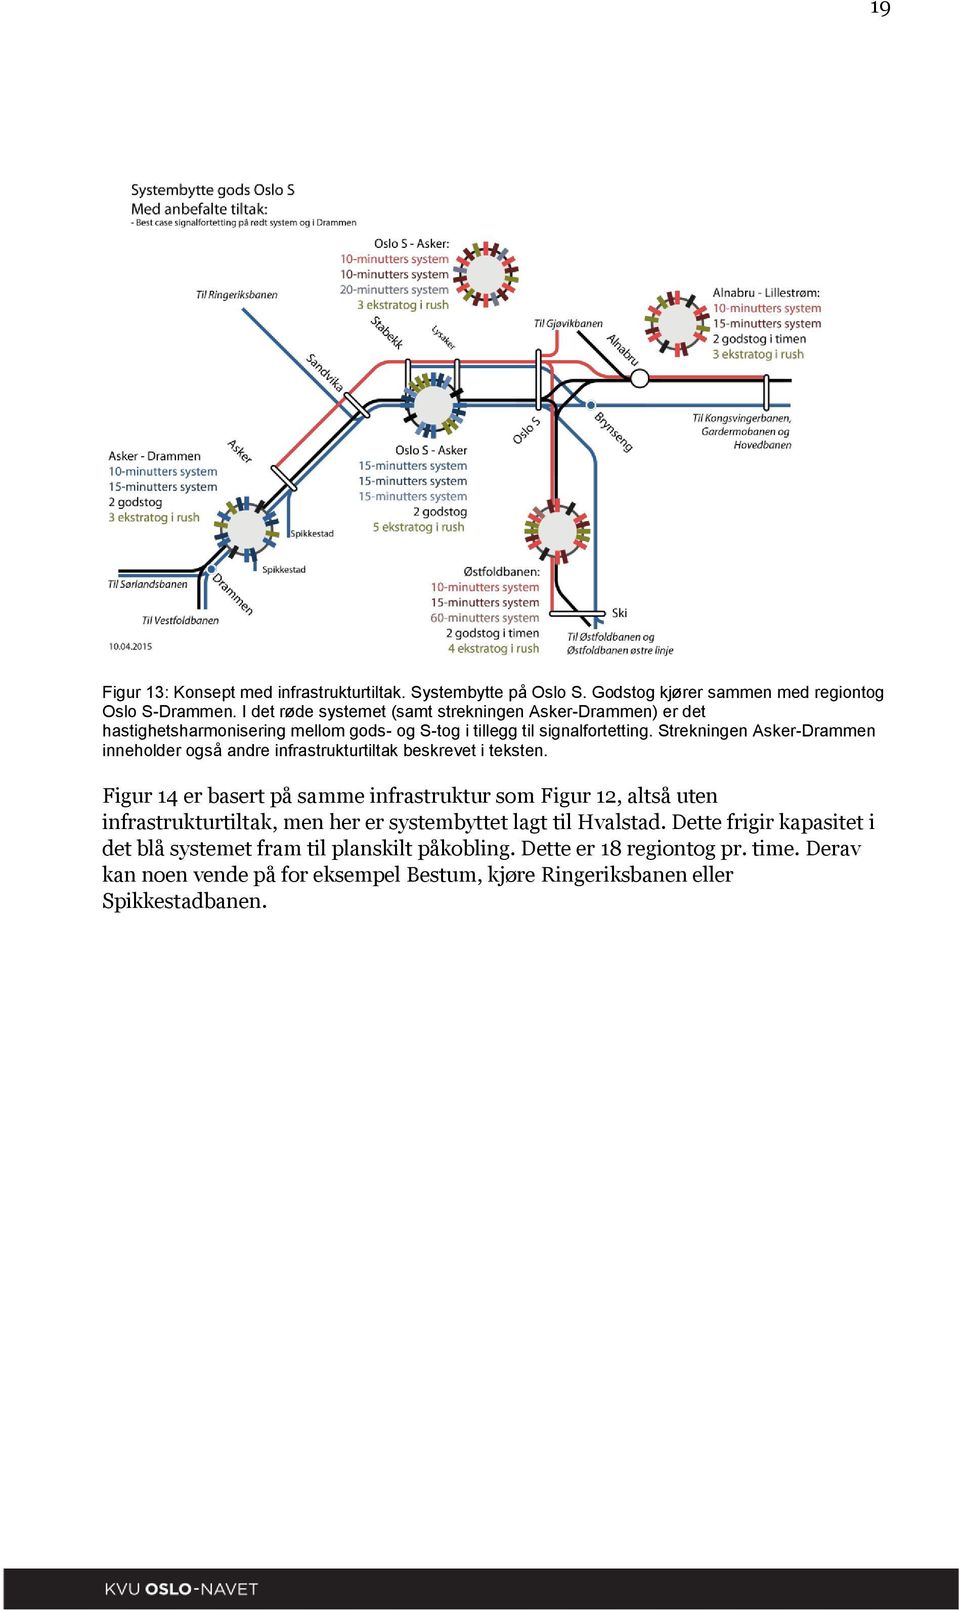 Strekningen Asker-Drammen inneholder også andre infrastrukturtiltak beskrevet i teksten.